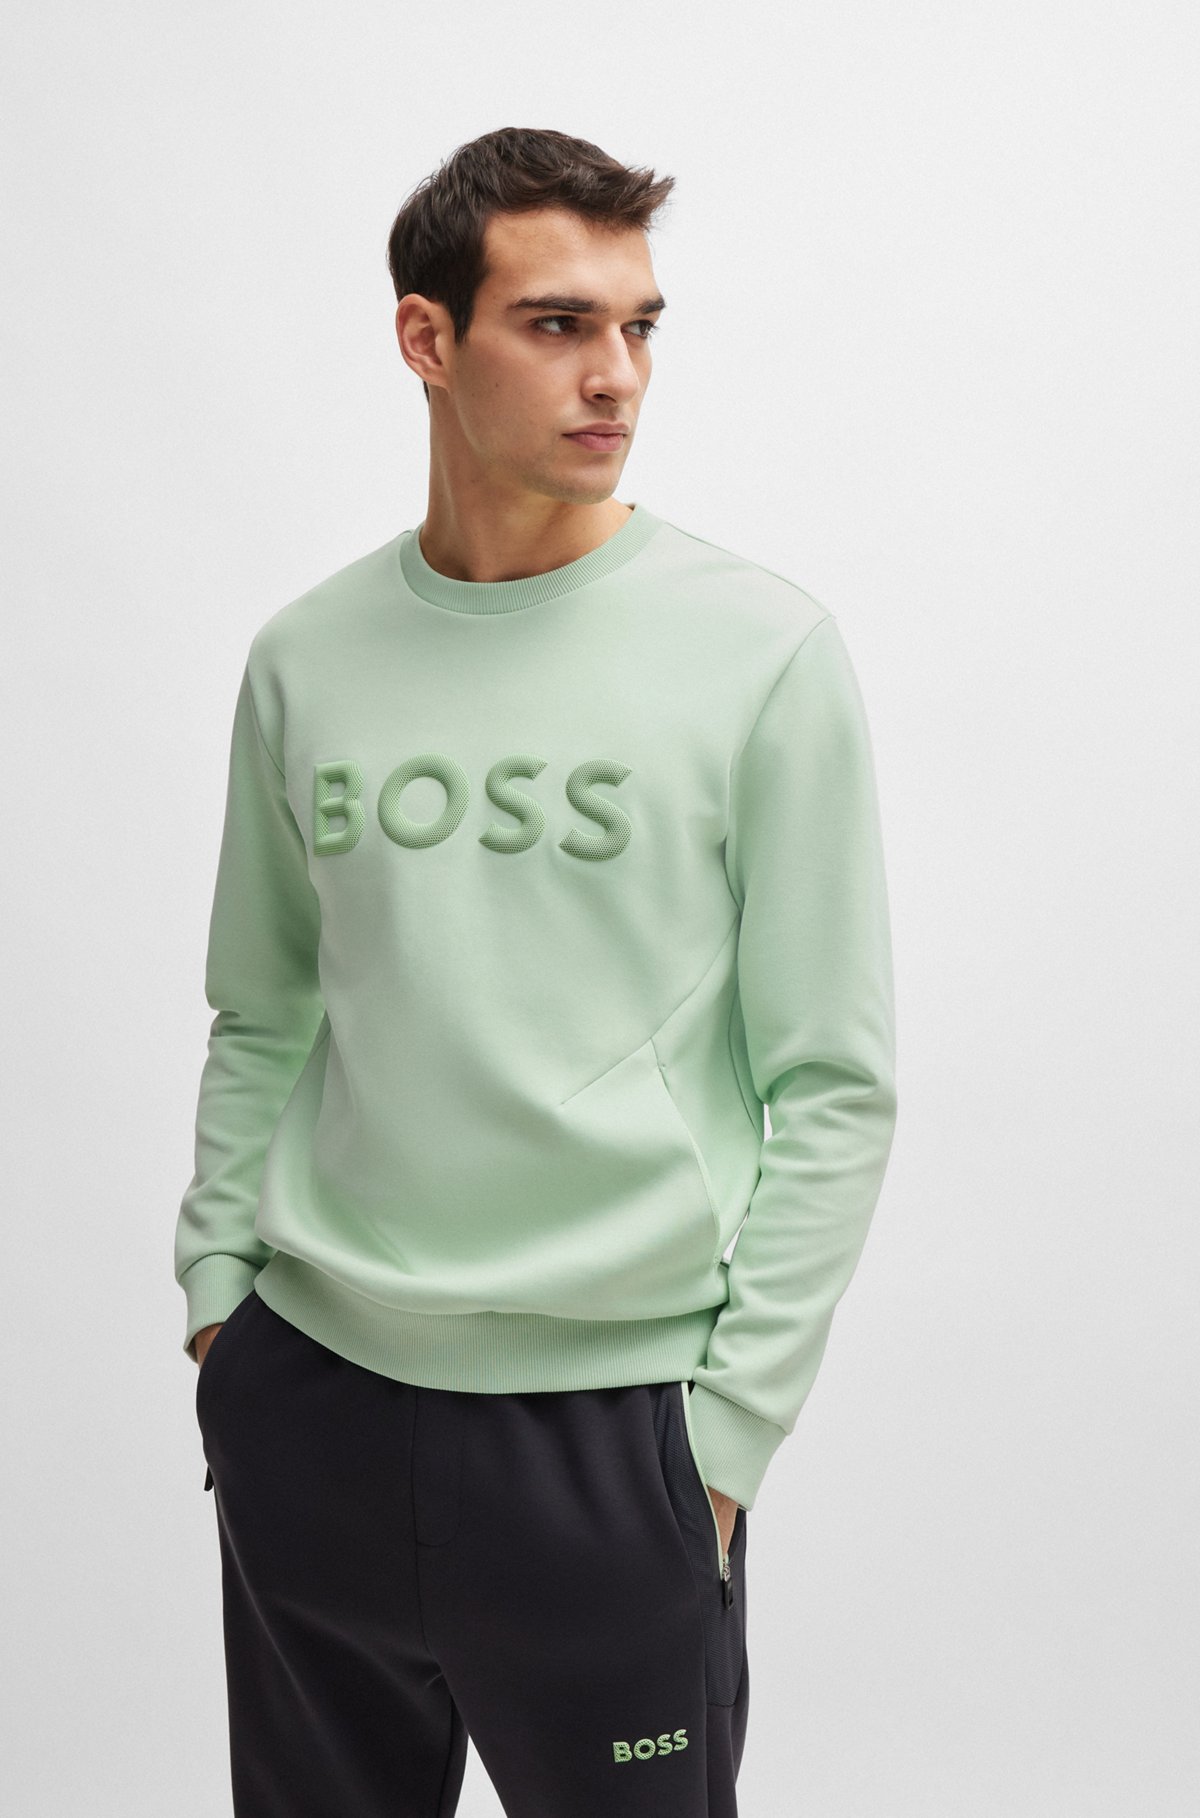 BOSS - コットンブレンド スウェットシャツ 3Dモールドロゴ